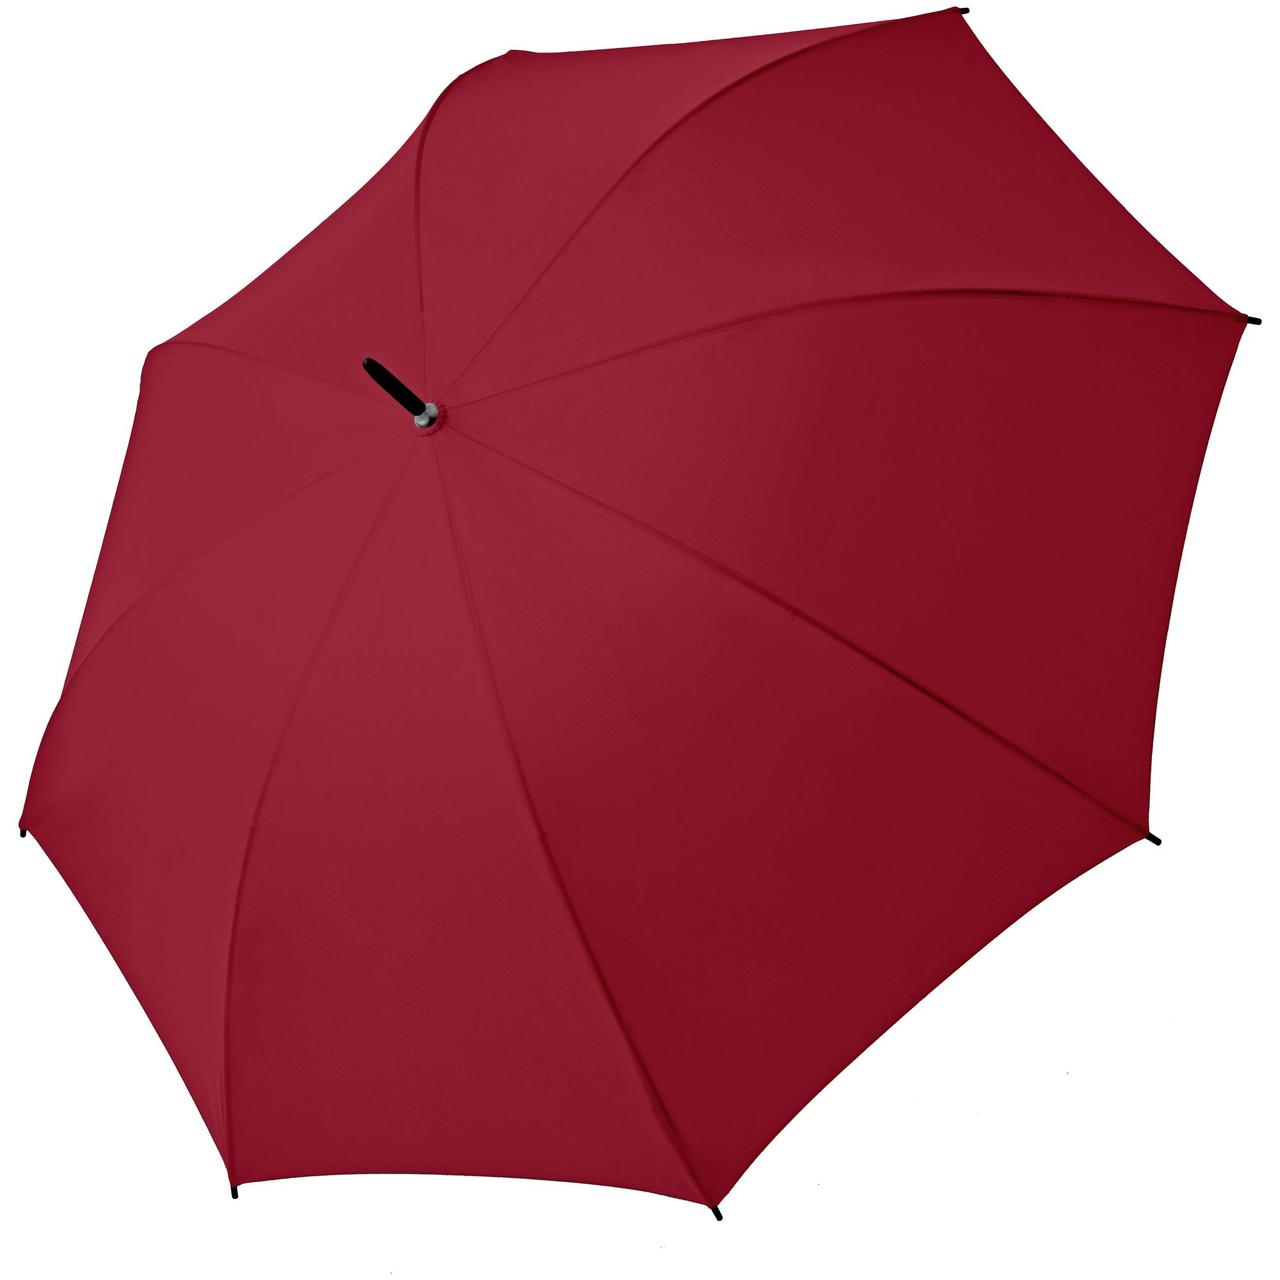 Зонт-трость Hit Golf AC, бордовый (артикул 11849.55), фото 1